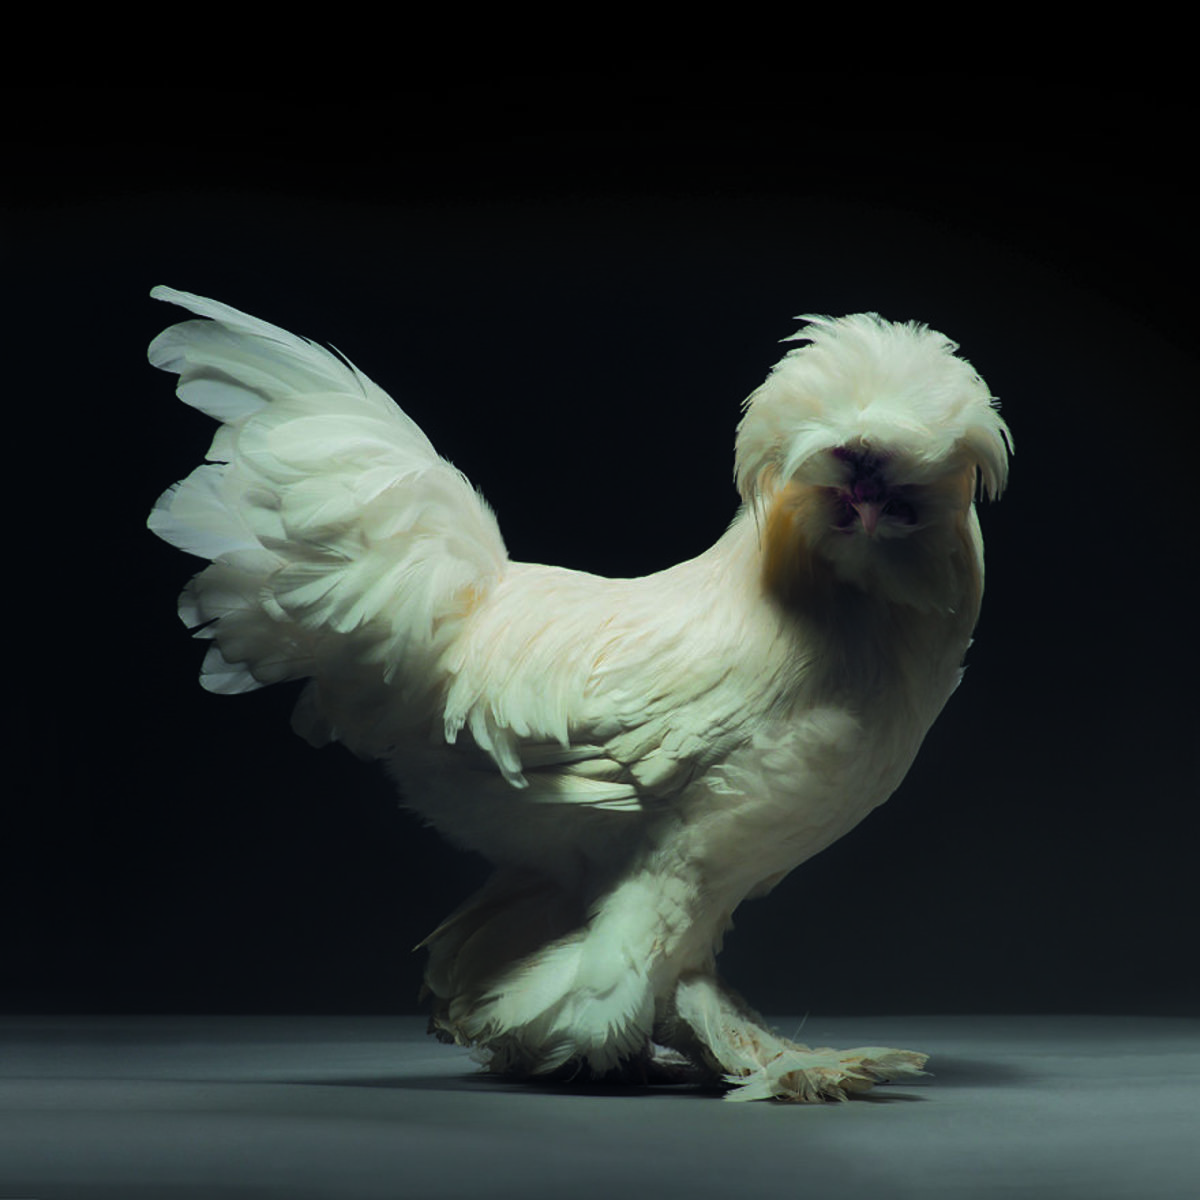 Retratos das galinhas mais bonitas do planeta capturam sua beleza subestimada 10